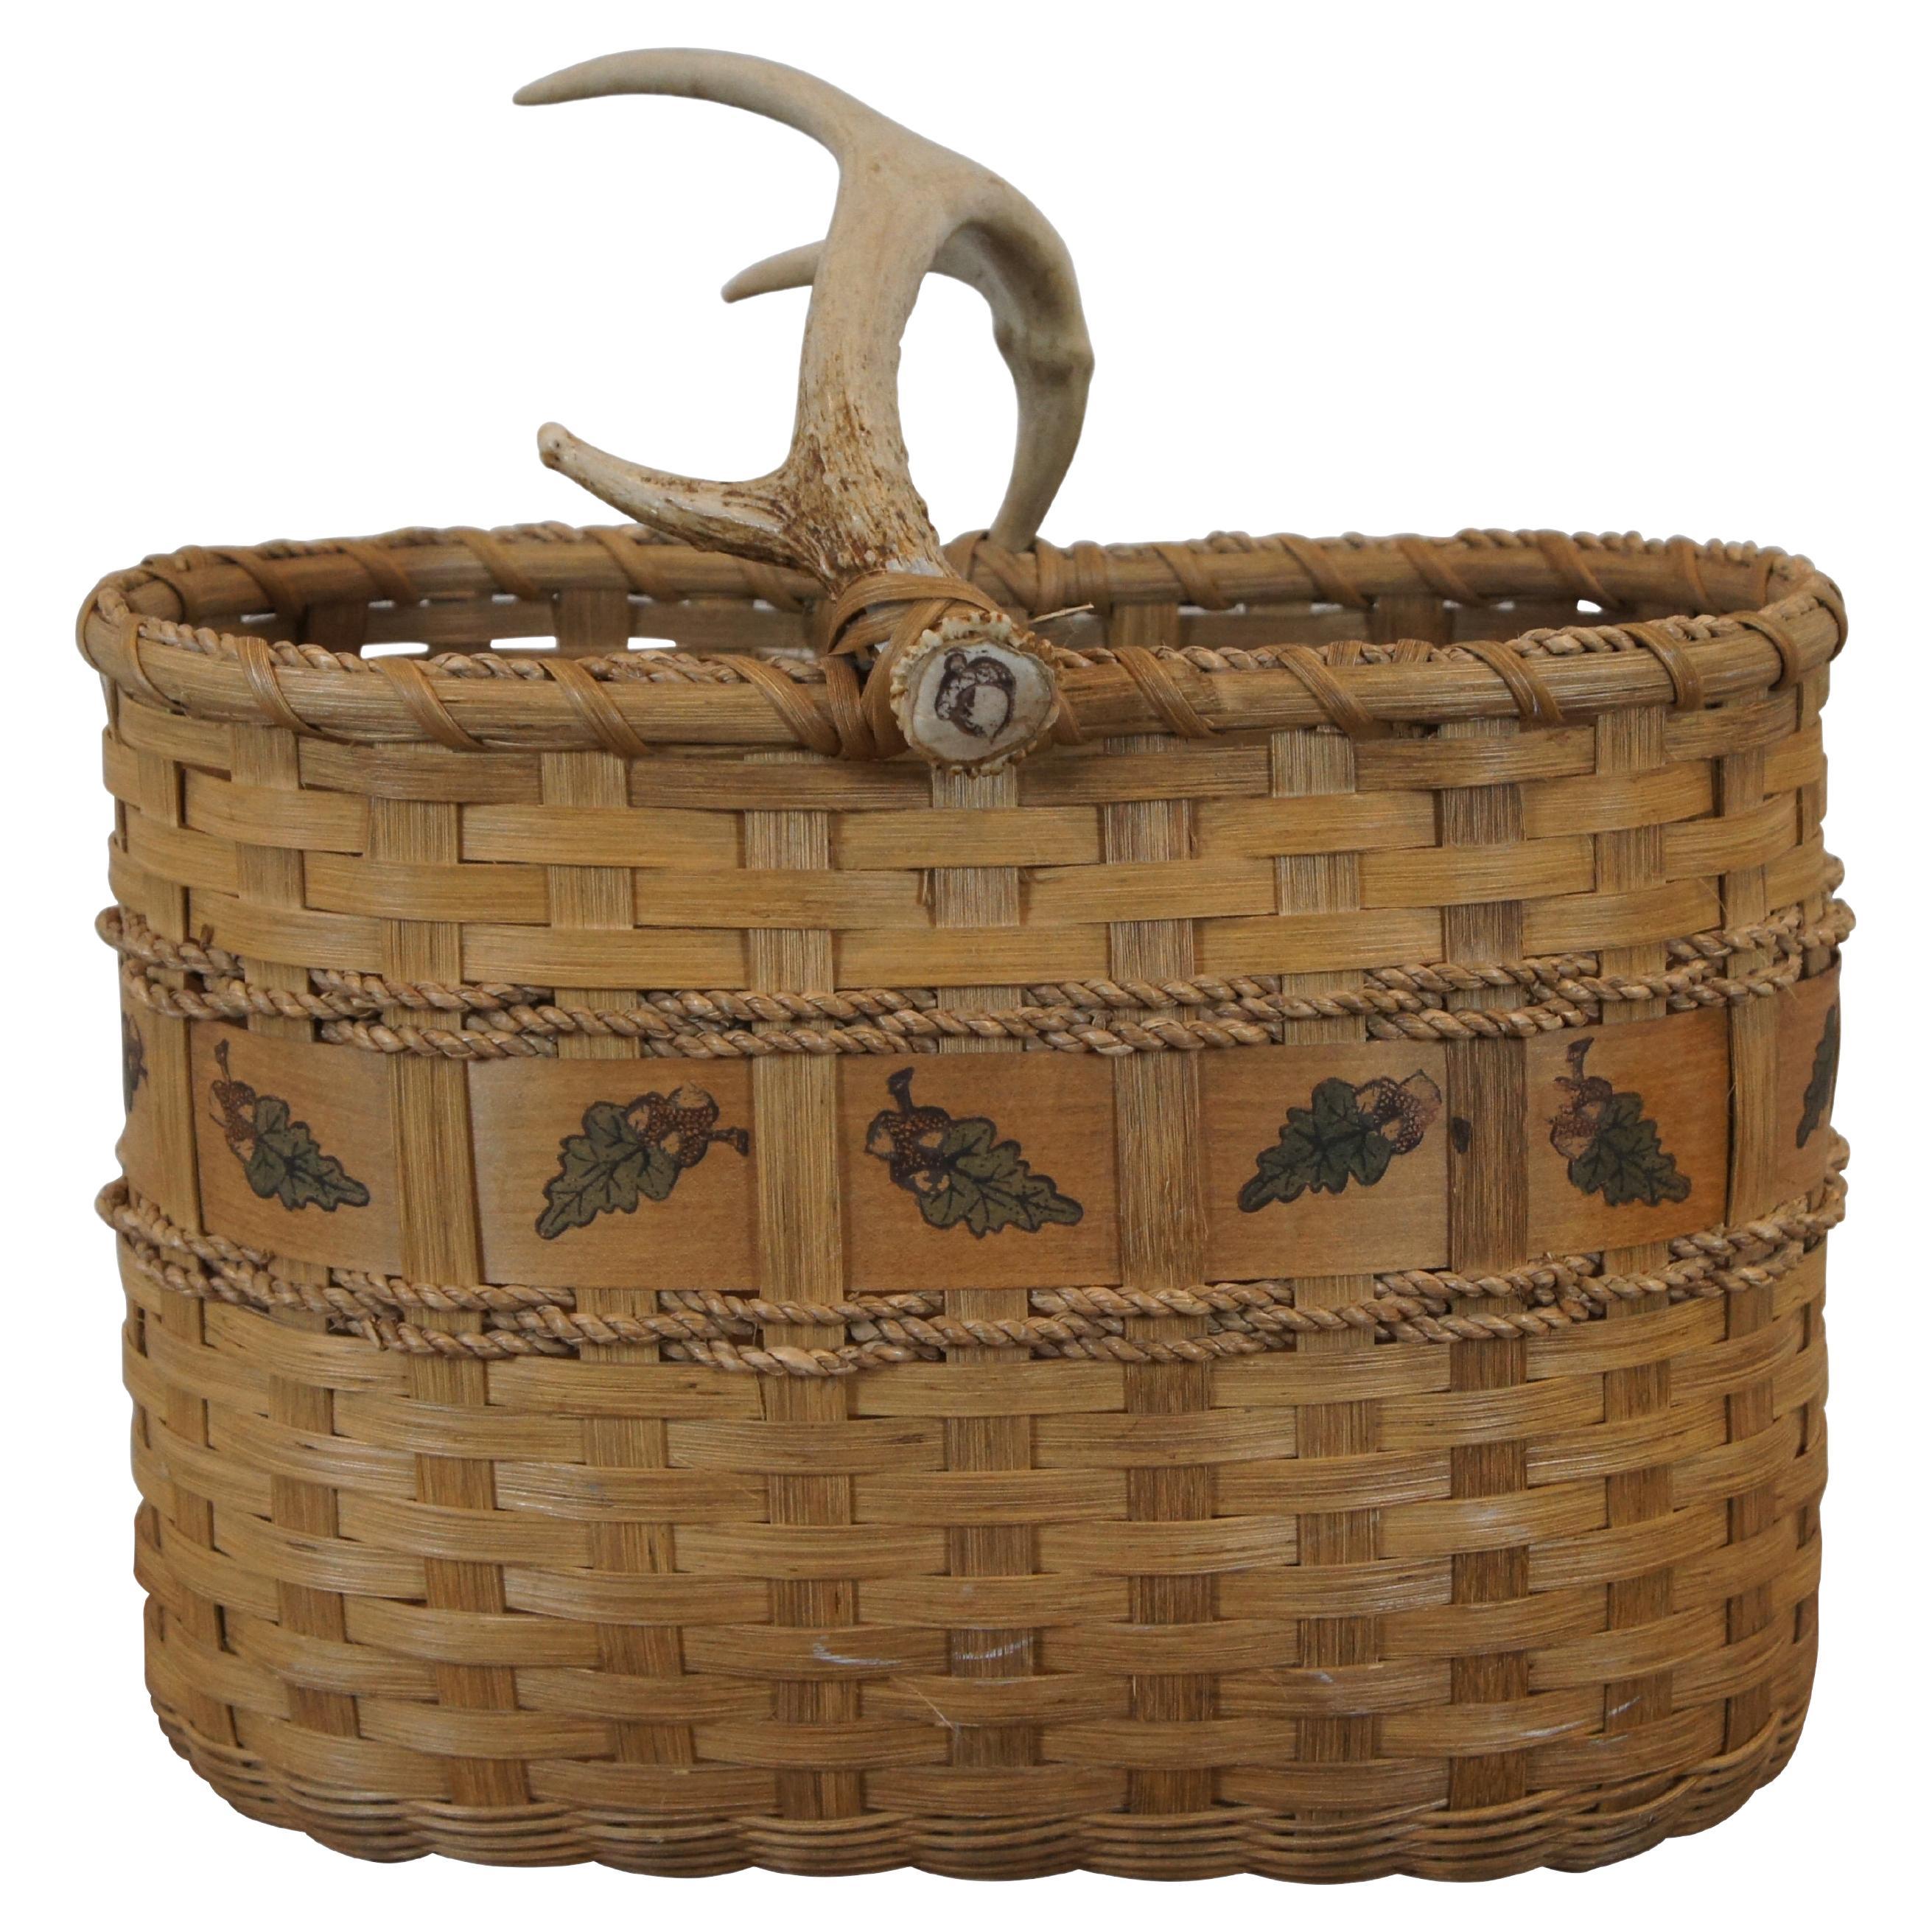 Vintage Deer Antler Horn Woven Wicker Rope Oval Harvest Basket 17"